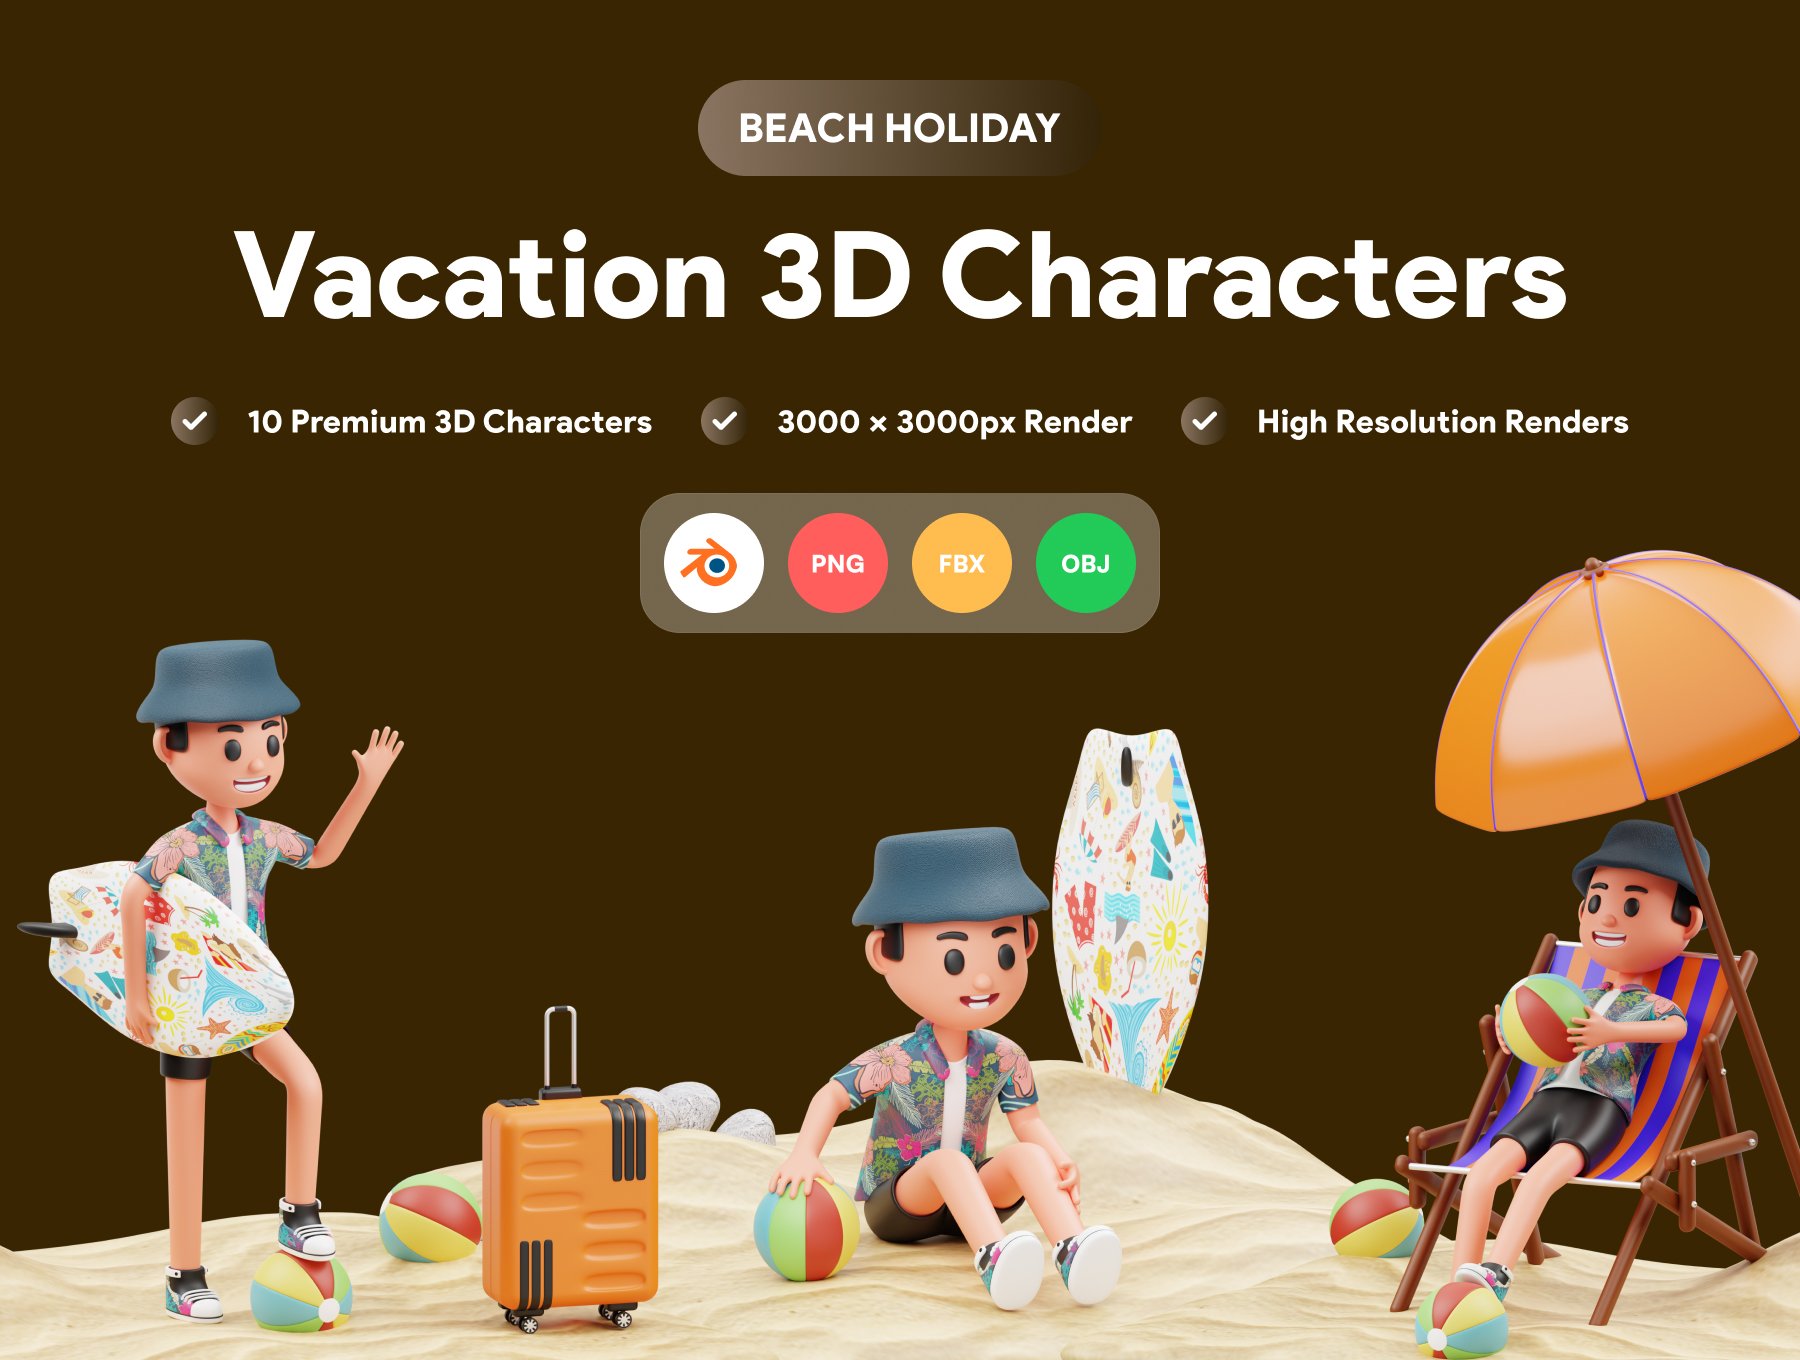 三维渲染假期旅行海滩度假主题卡通人物插画素材 Vacation 3D Character Illustration